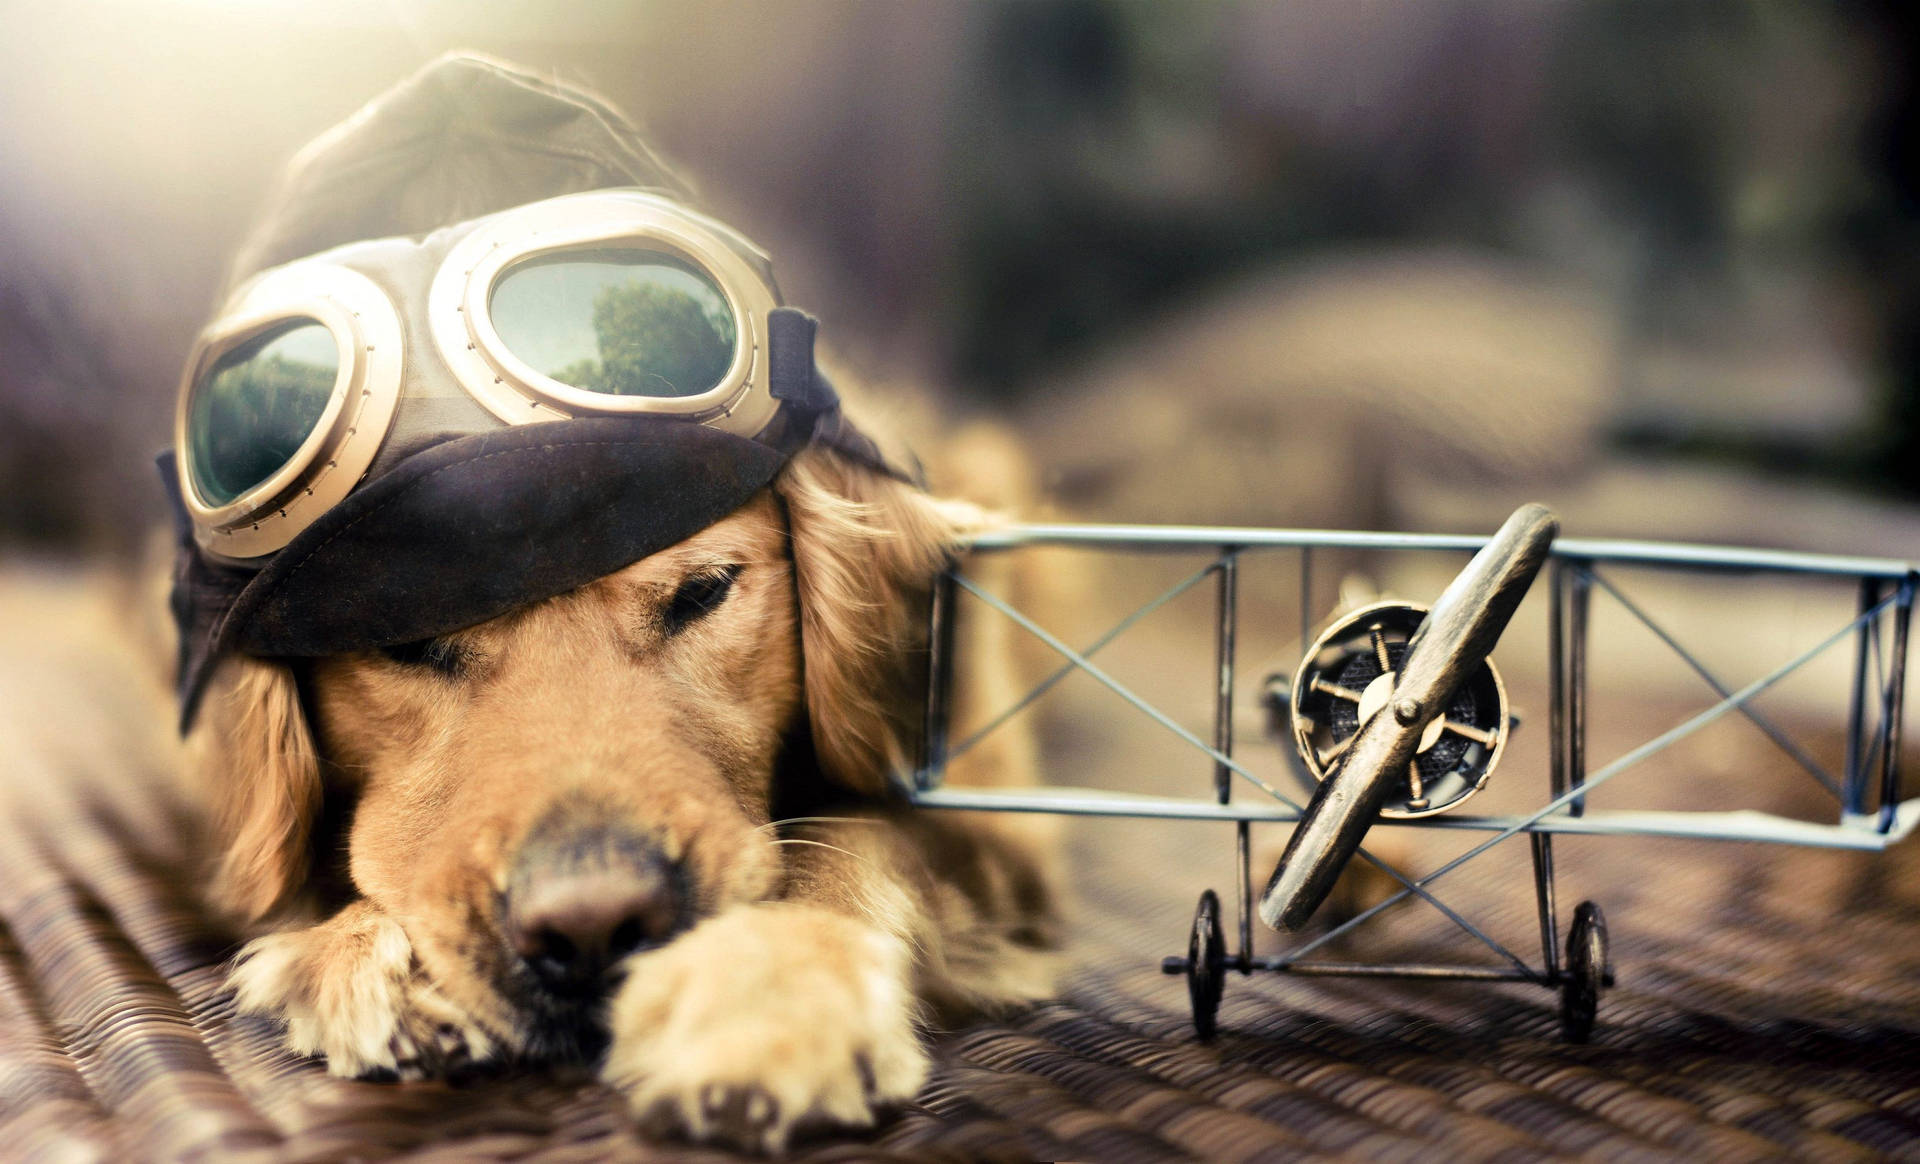 Cute Dog Bi-plane Toy Wallpaper